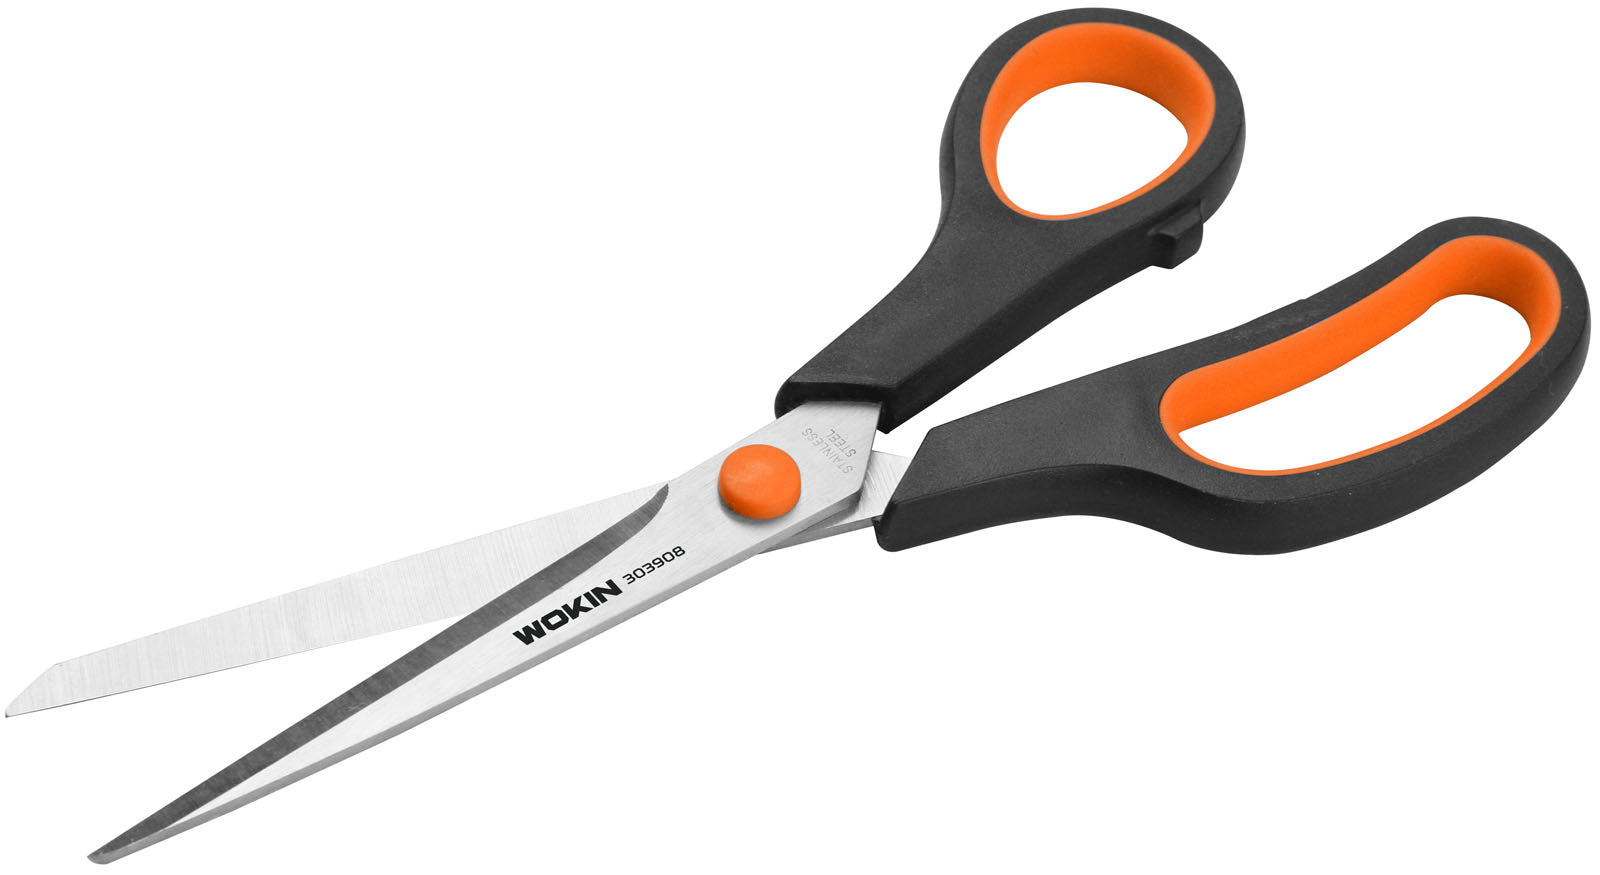 Wokin 8 inch Household Scissors